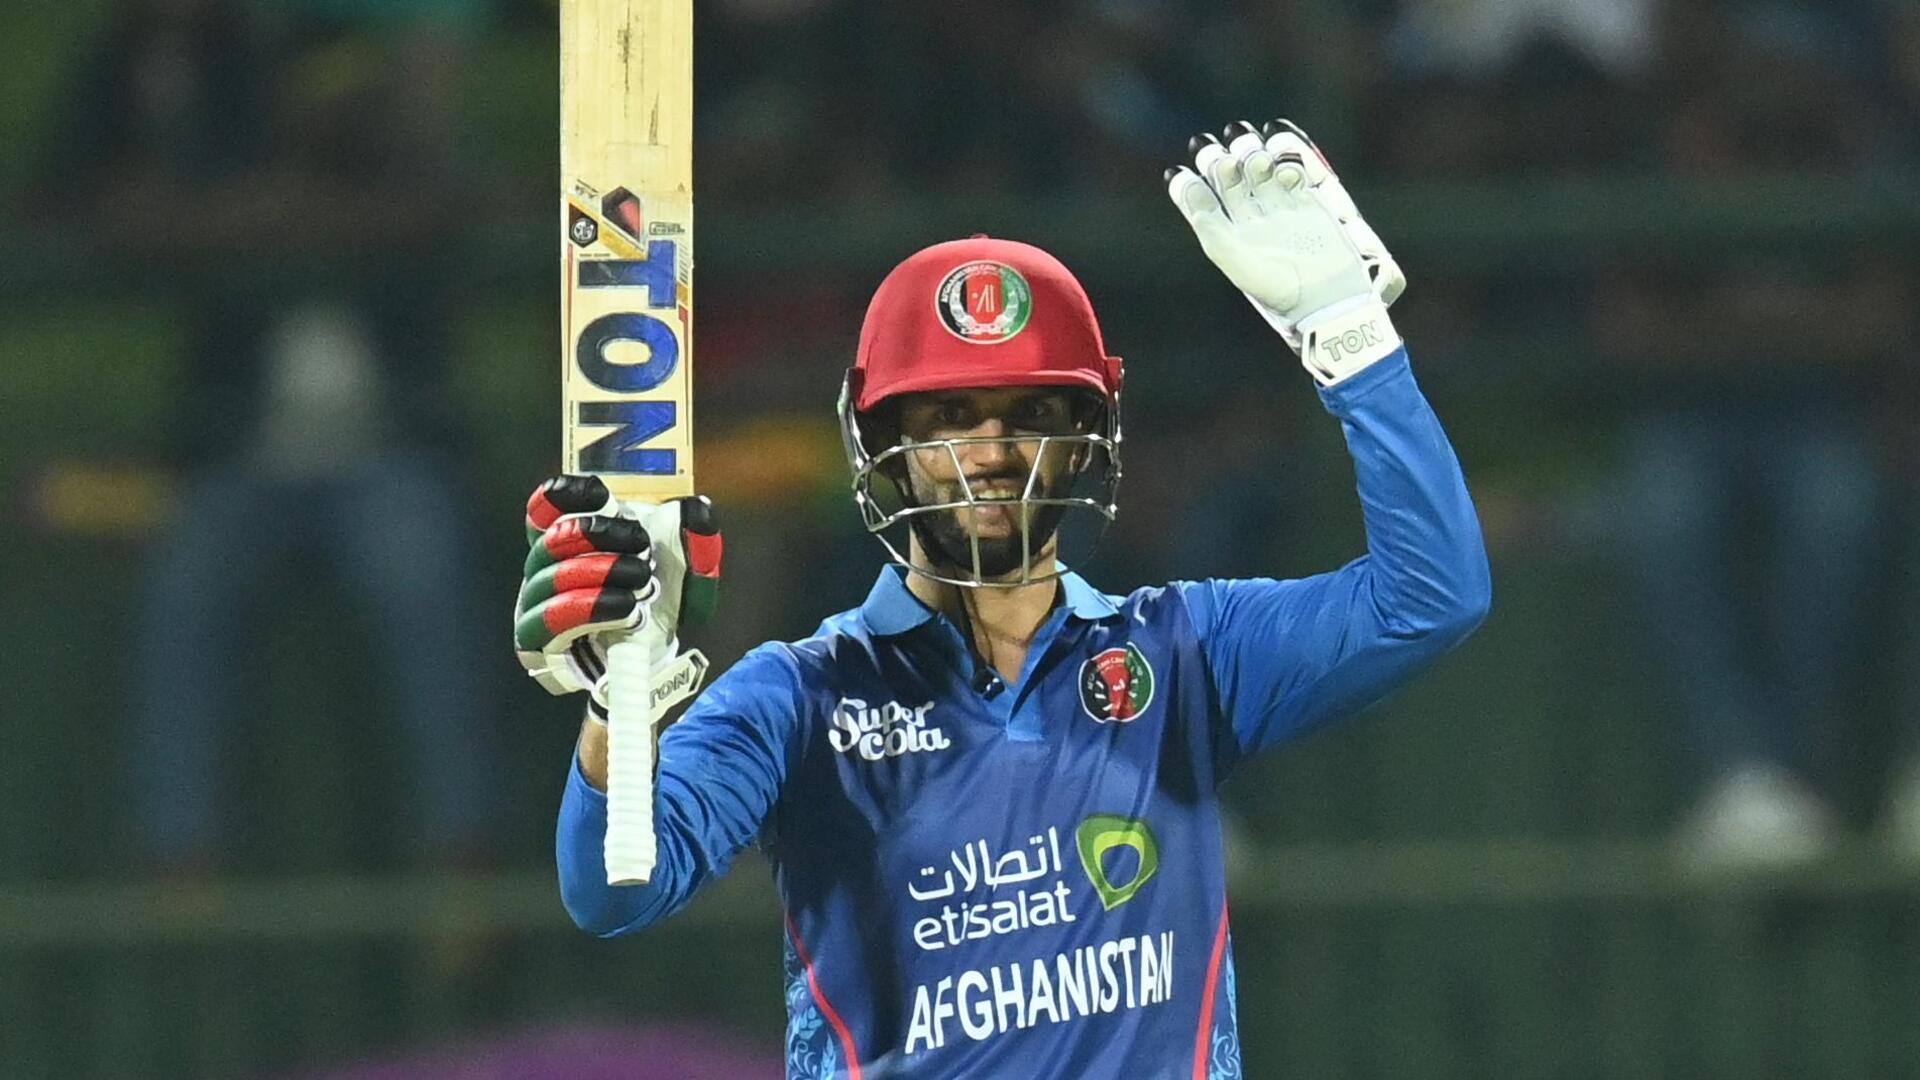 श्रीलंका बनाम अफगानिस्तान: अजमतुल्लाह उमरजई ने जड़ा अपना पहला वनडे शतक, जानिए आंकड़े